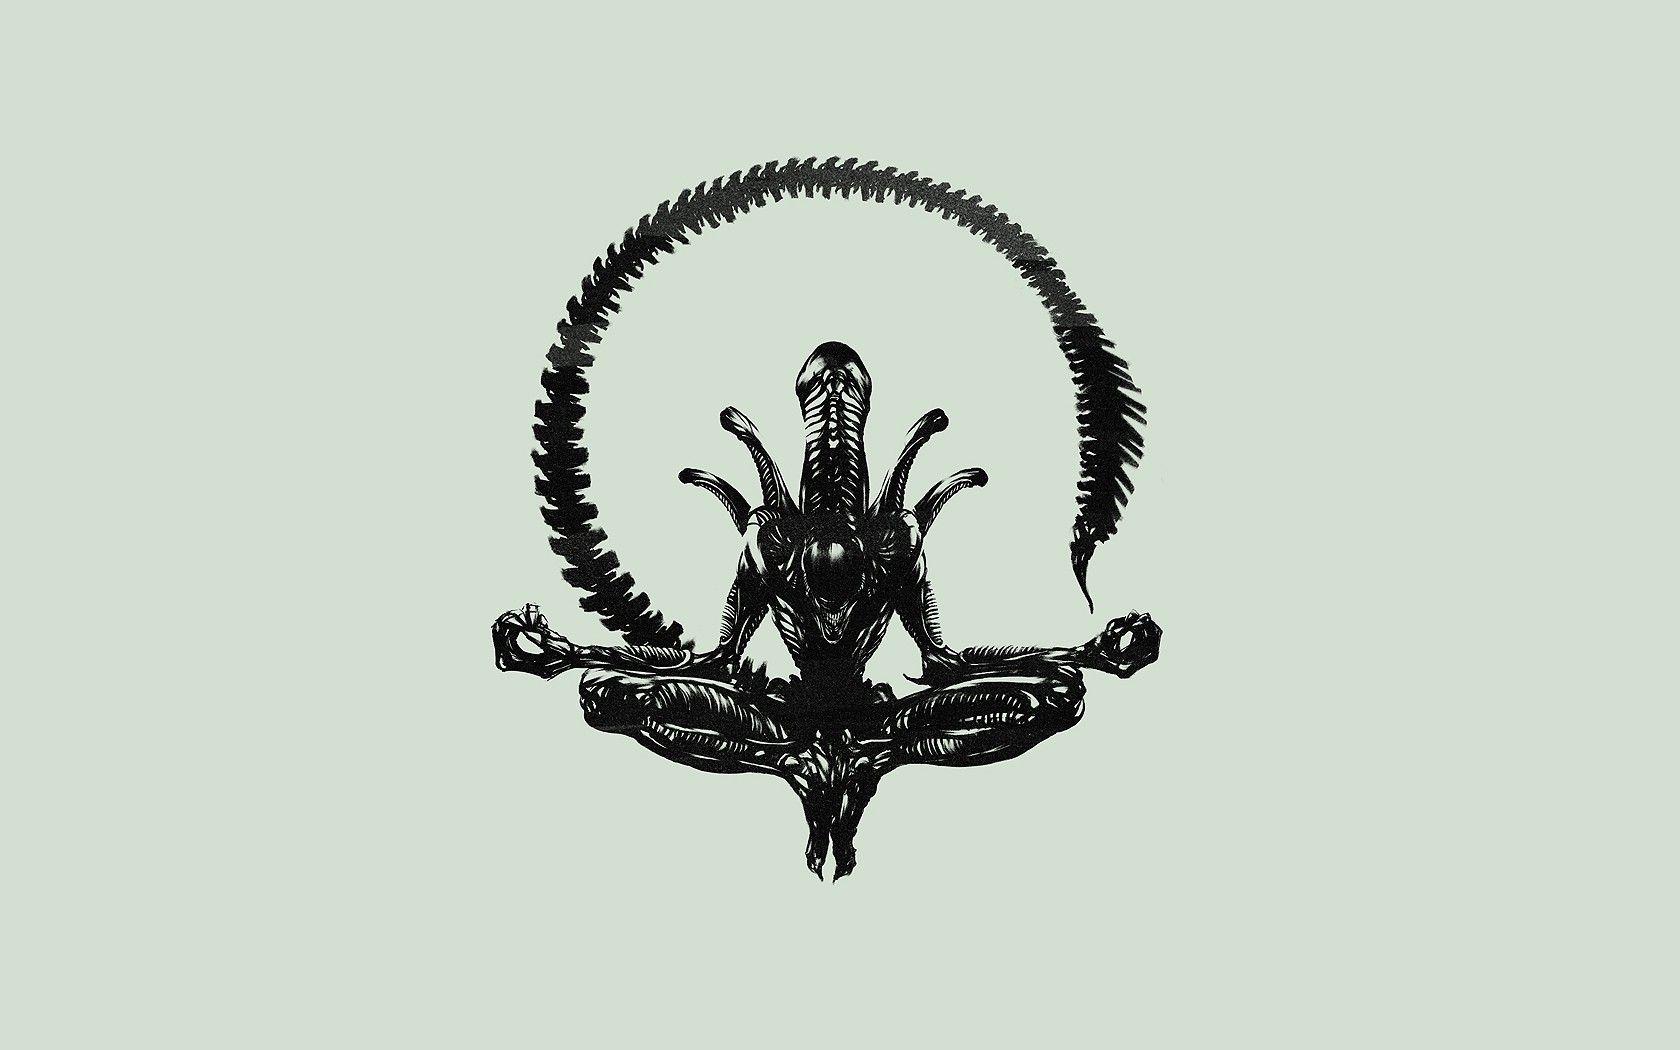 Alien Movie Logo - Wallpaper : drawing, illustration, minimalism, logo, skull ...